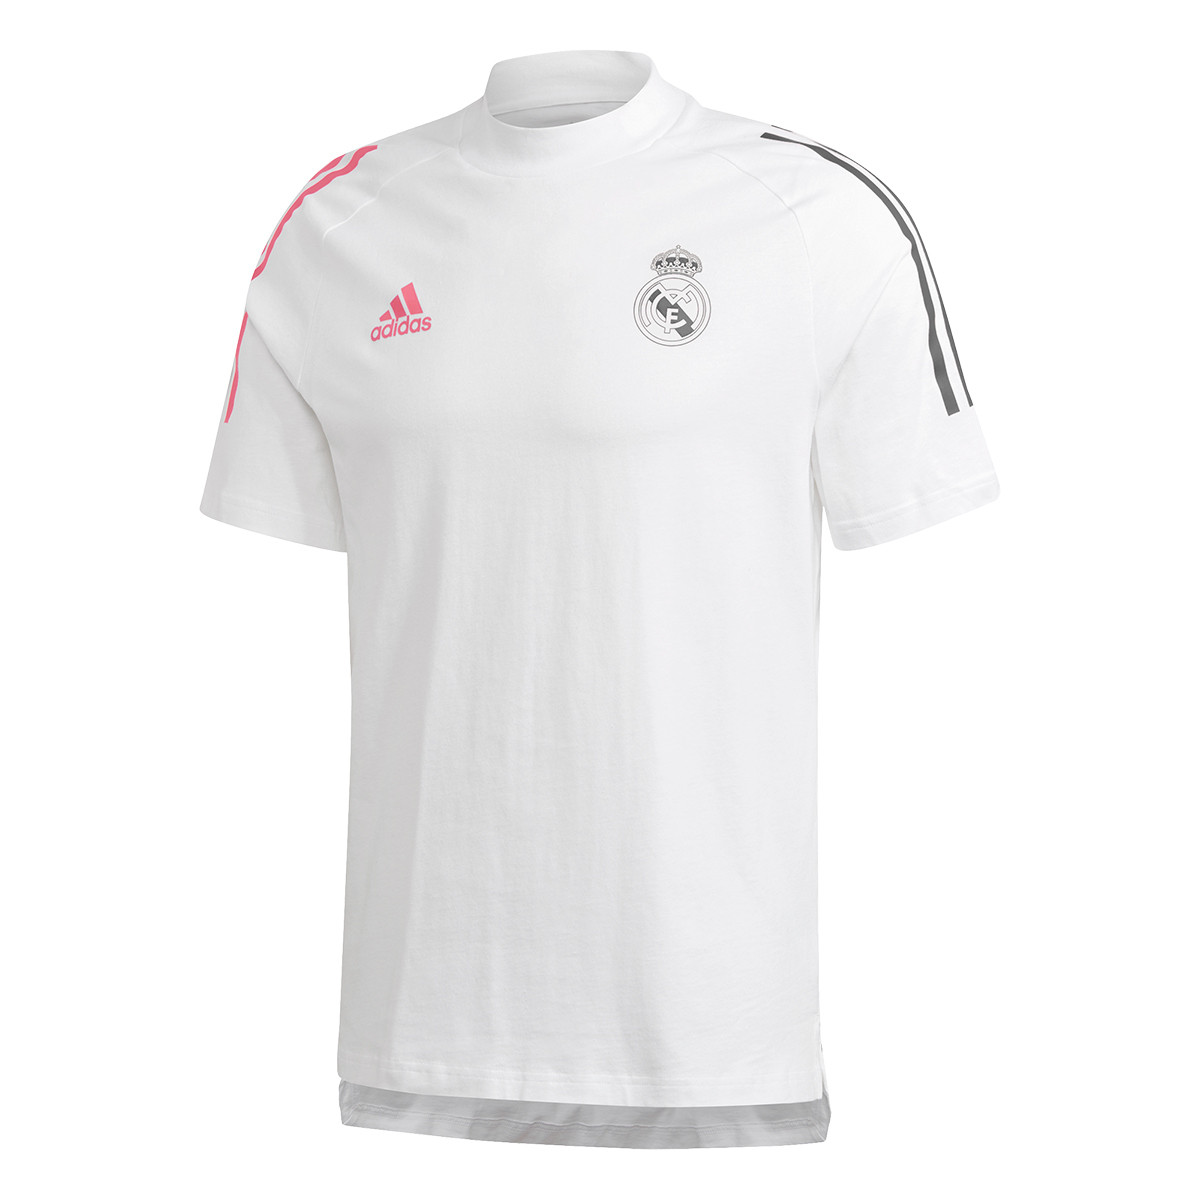 Adidas Real Madrid tréningové tričko biele pánske - SKLADOM